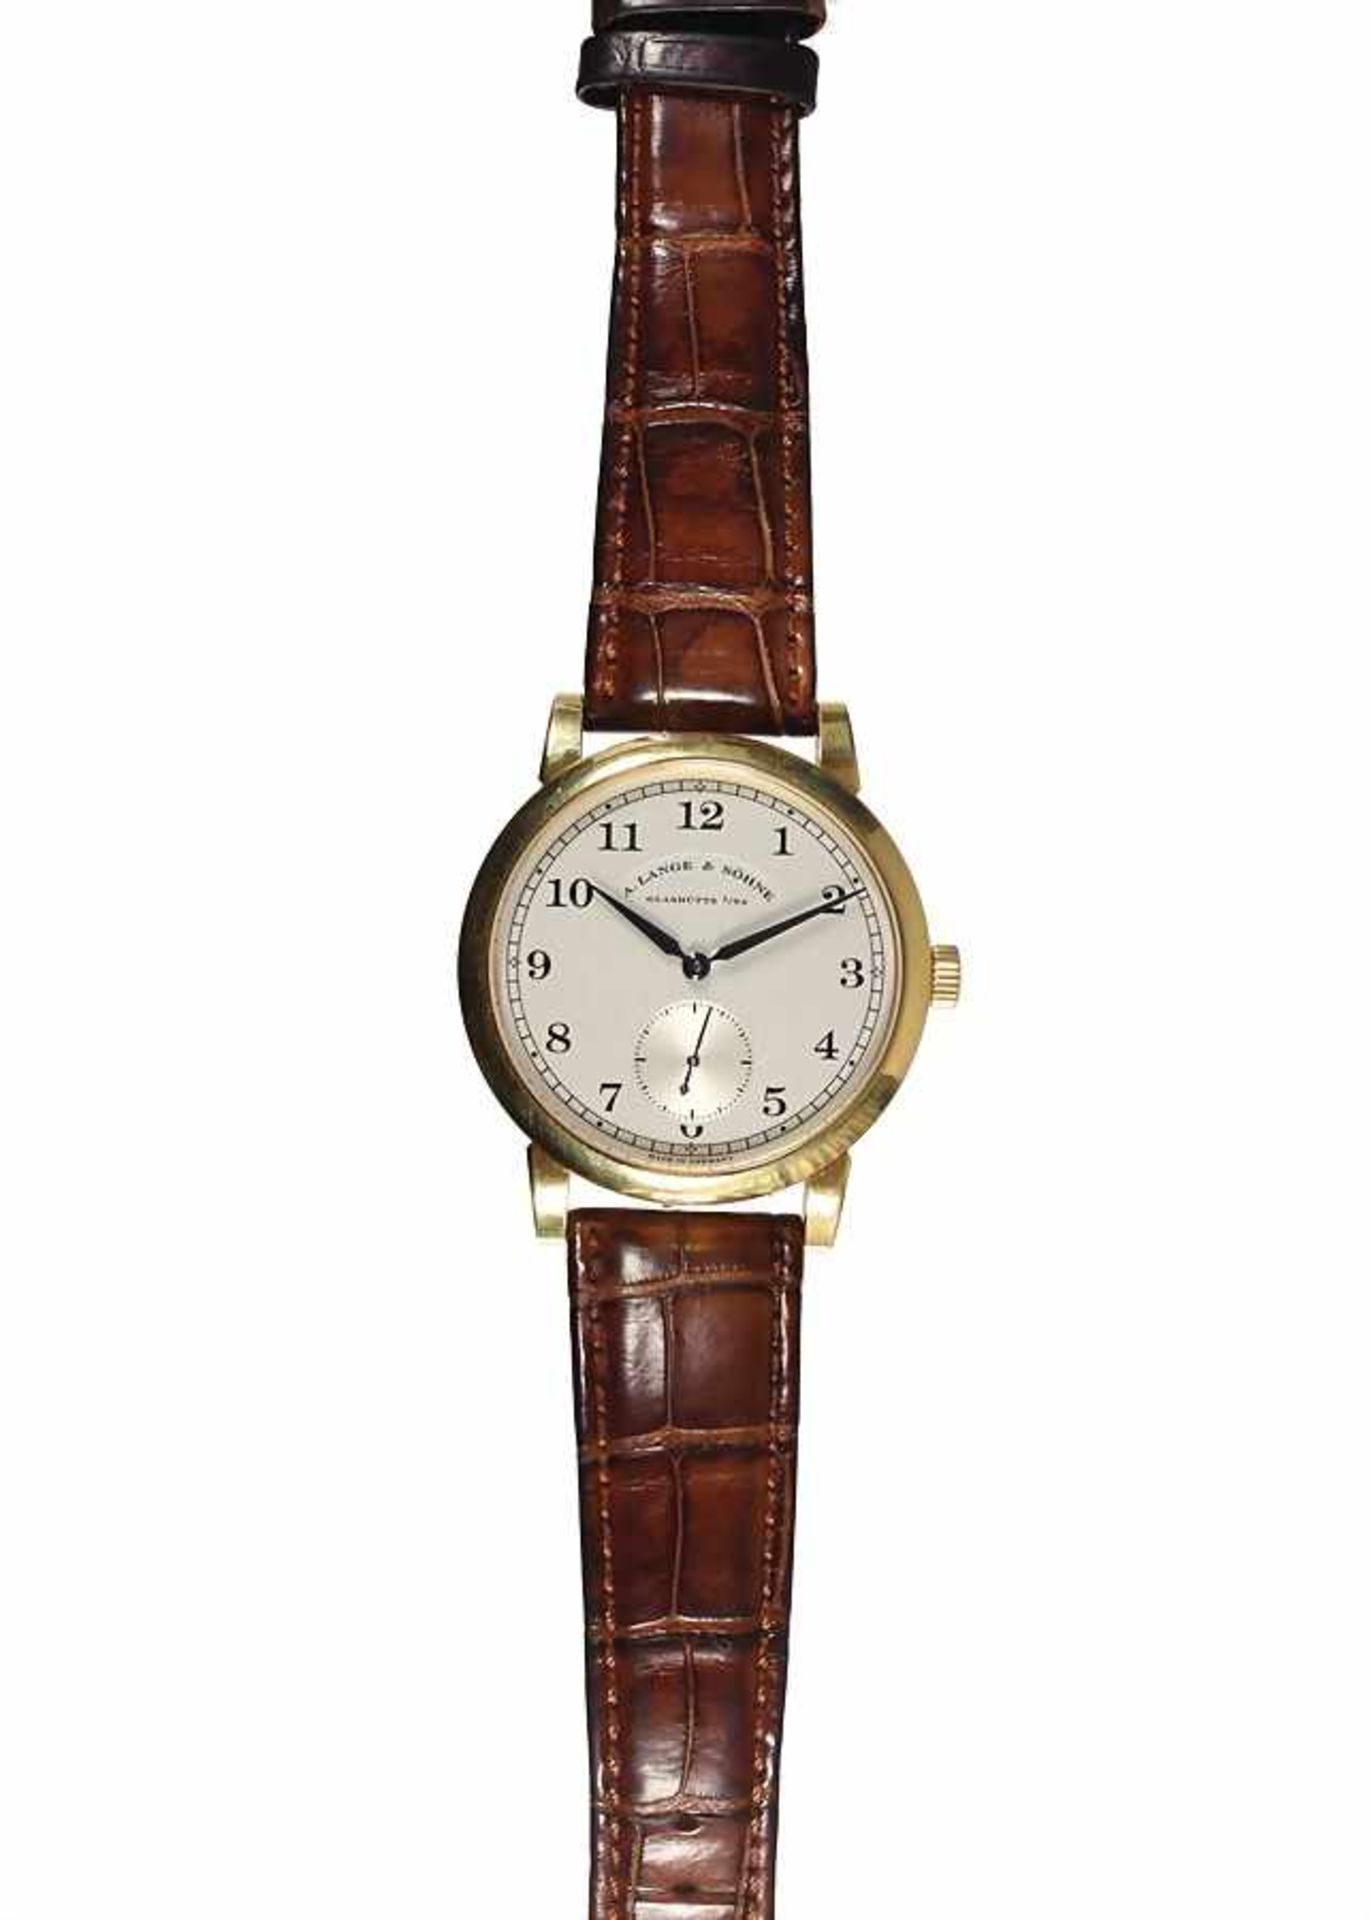 Herren-Armbanduhr, "A. LANGE & SÖHNE 1815" Glashütte, um 2000, Gelbgold 750/000, arab. Zahlen, kl. - Bild 3 aus 3